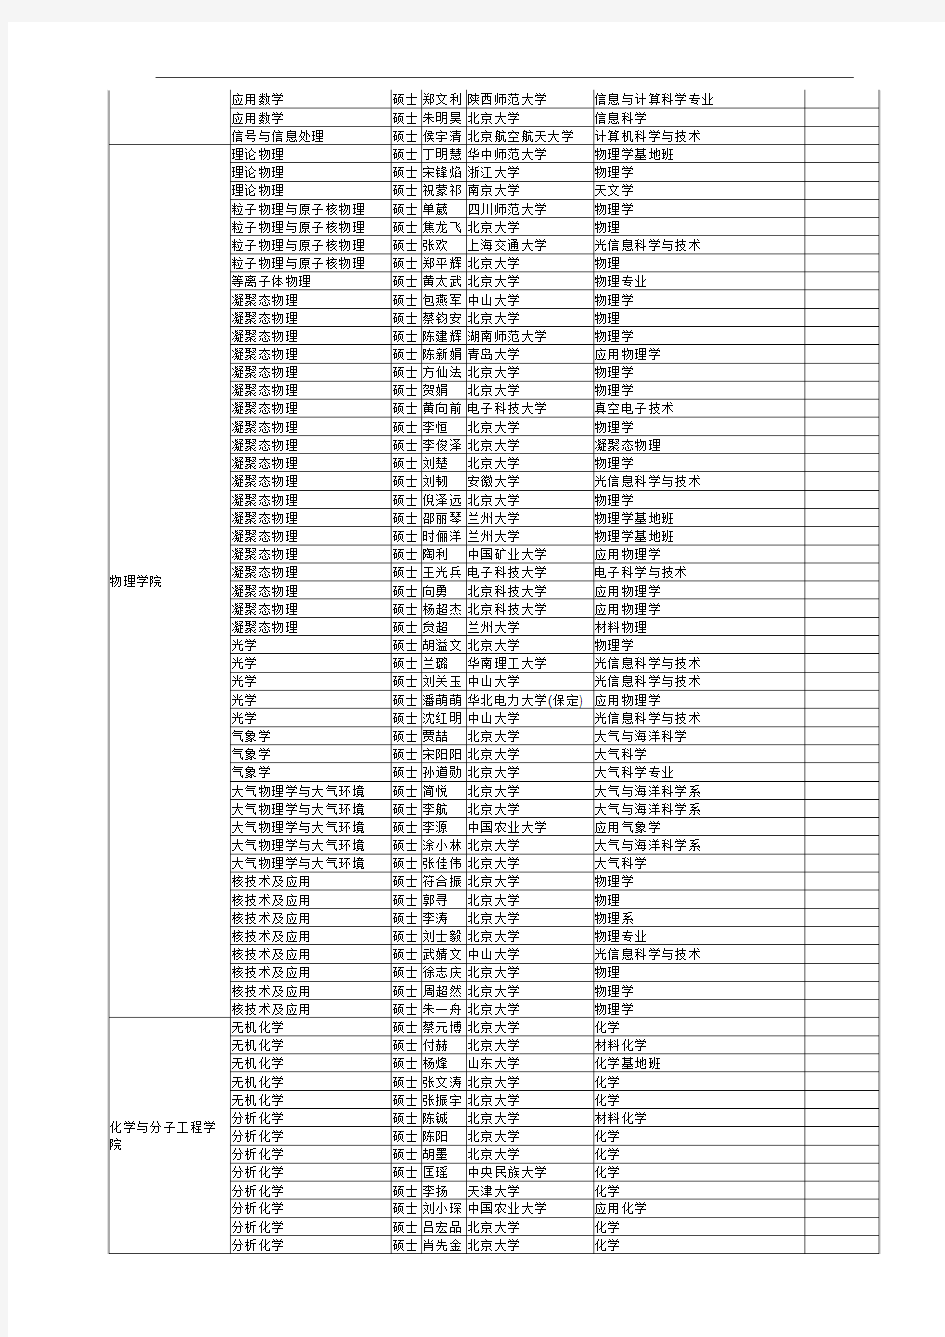 北京大学2011年拟初取推荐免试研究生公示名单